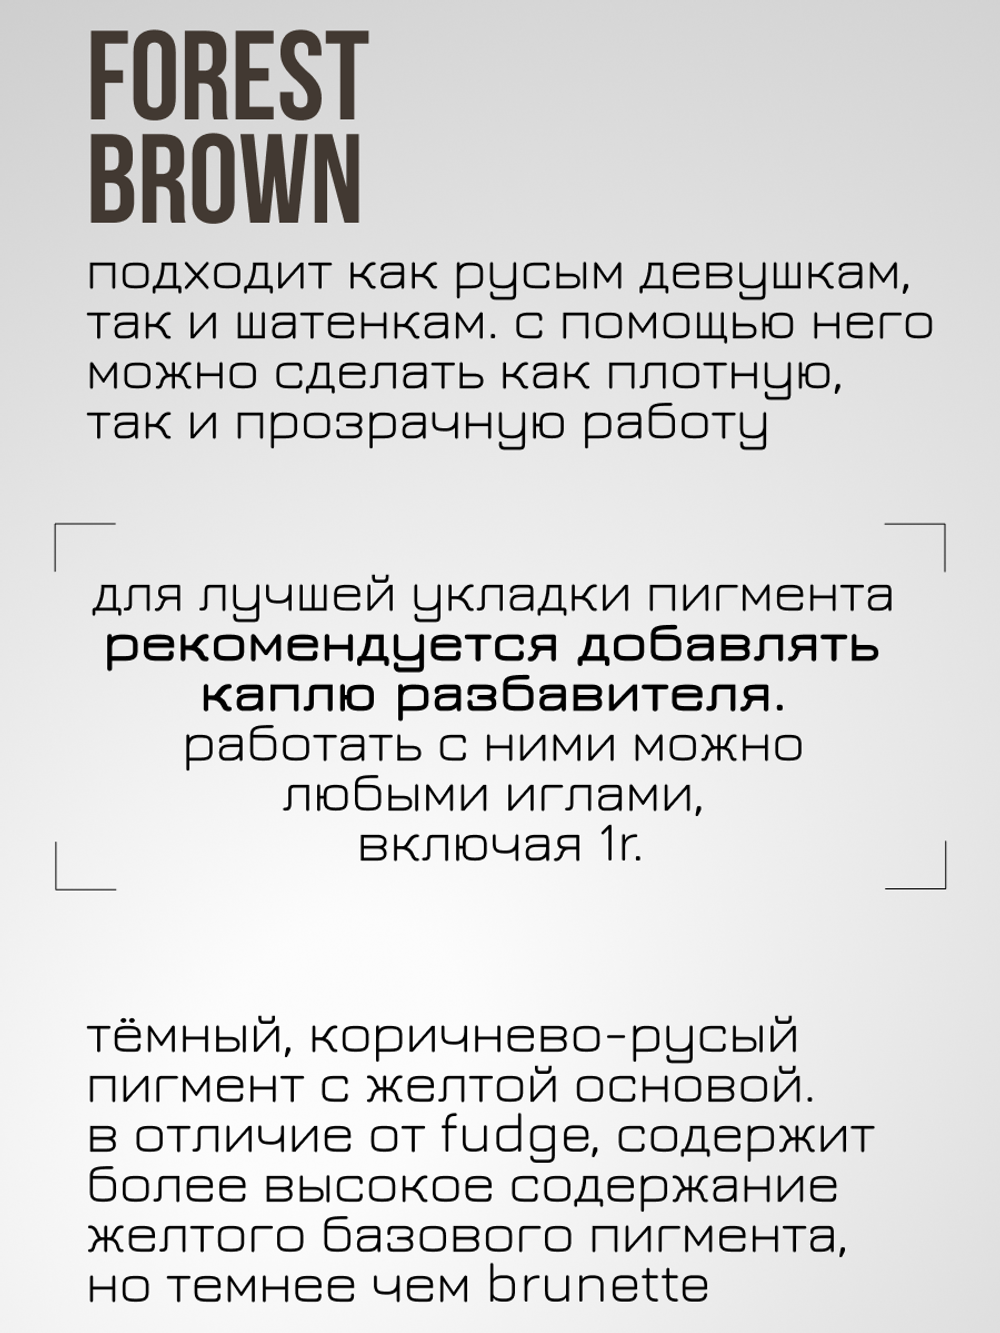 Пигмент для татуажа бровей Permablend "Forest Brown"